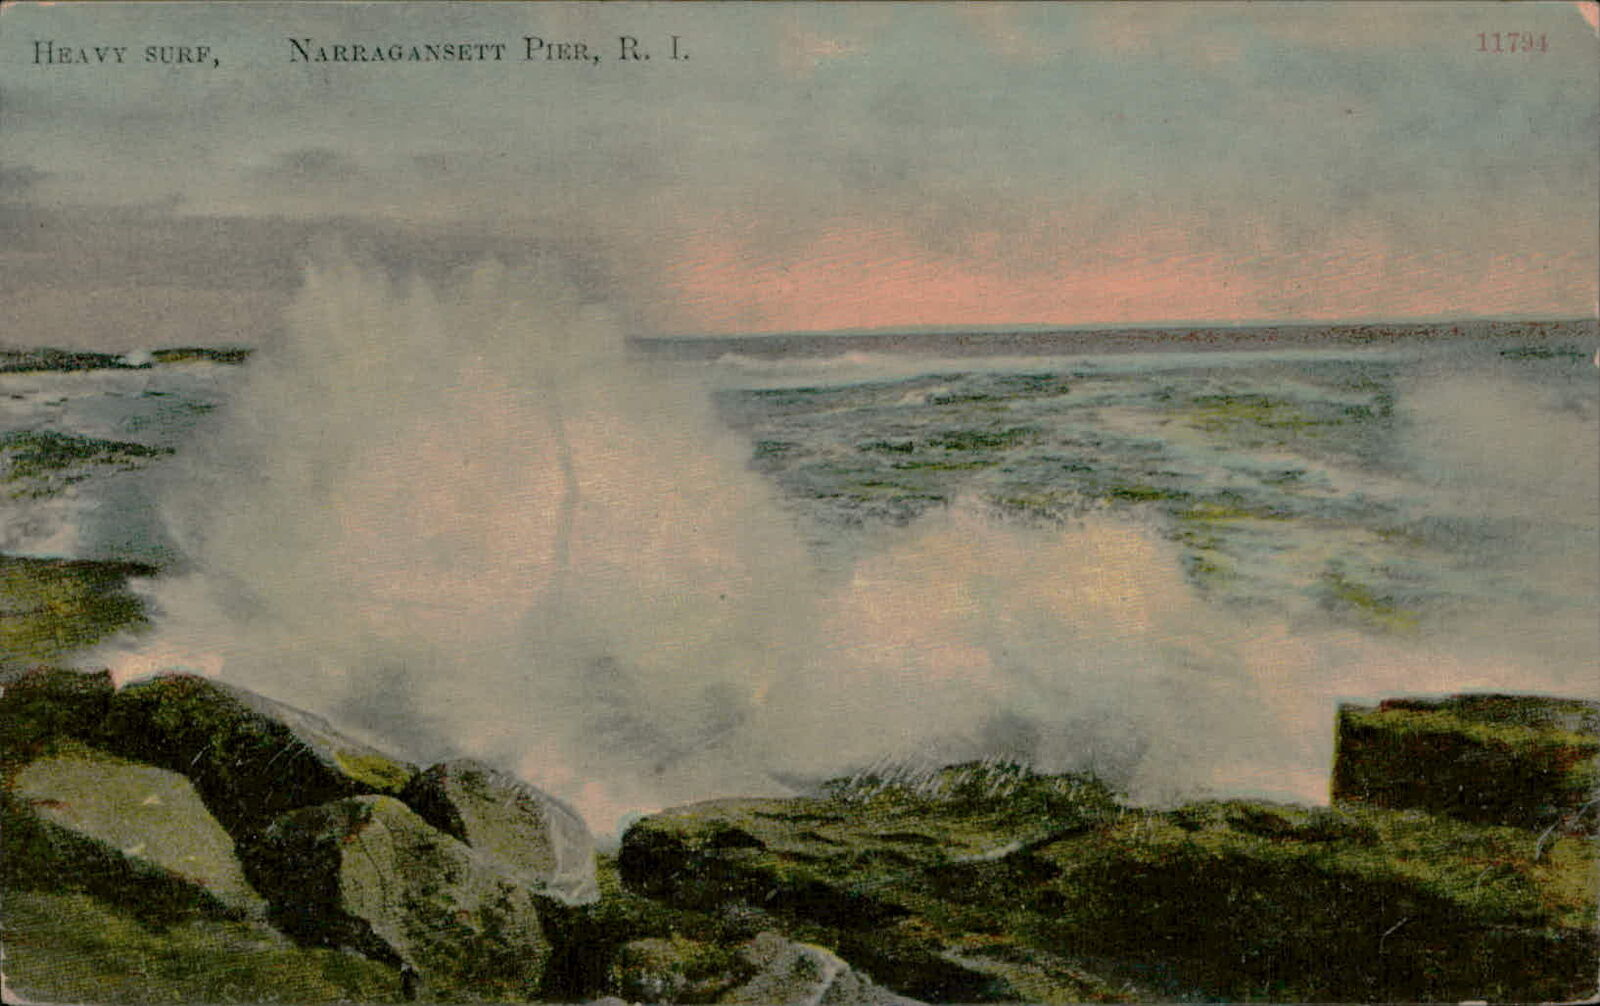 Postcard: DB HEAVY SURF, NARRAGANSETT PIER, R. I. 11794